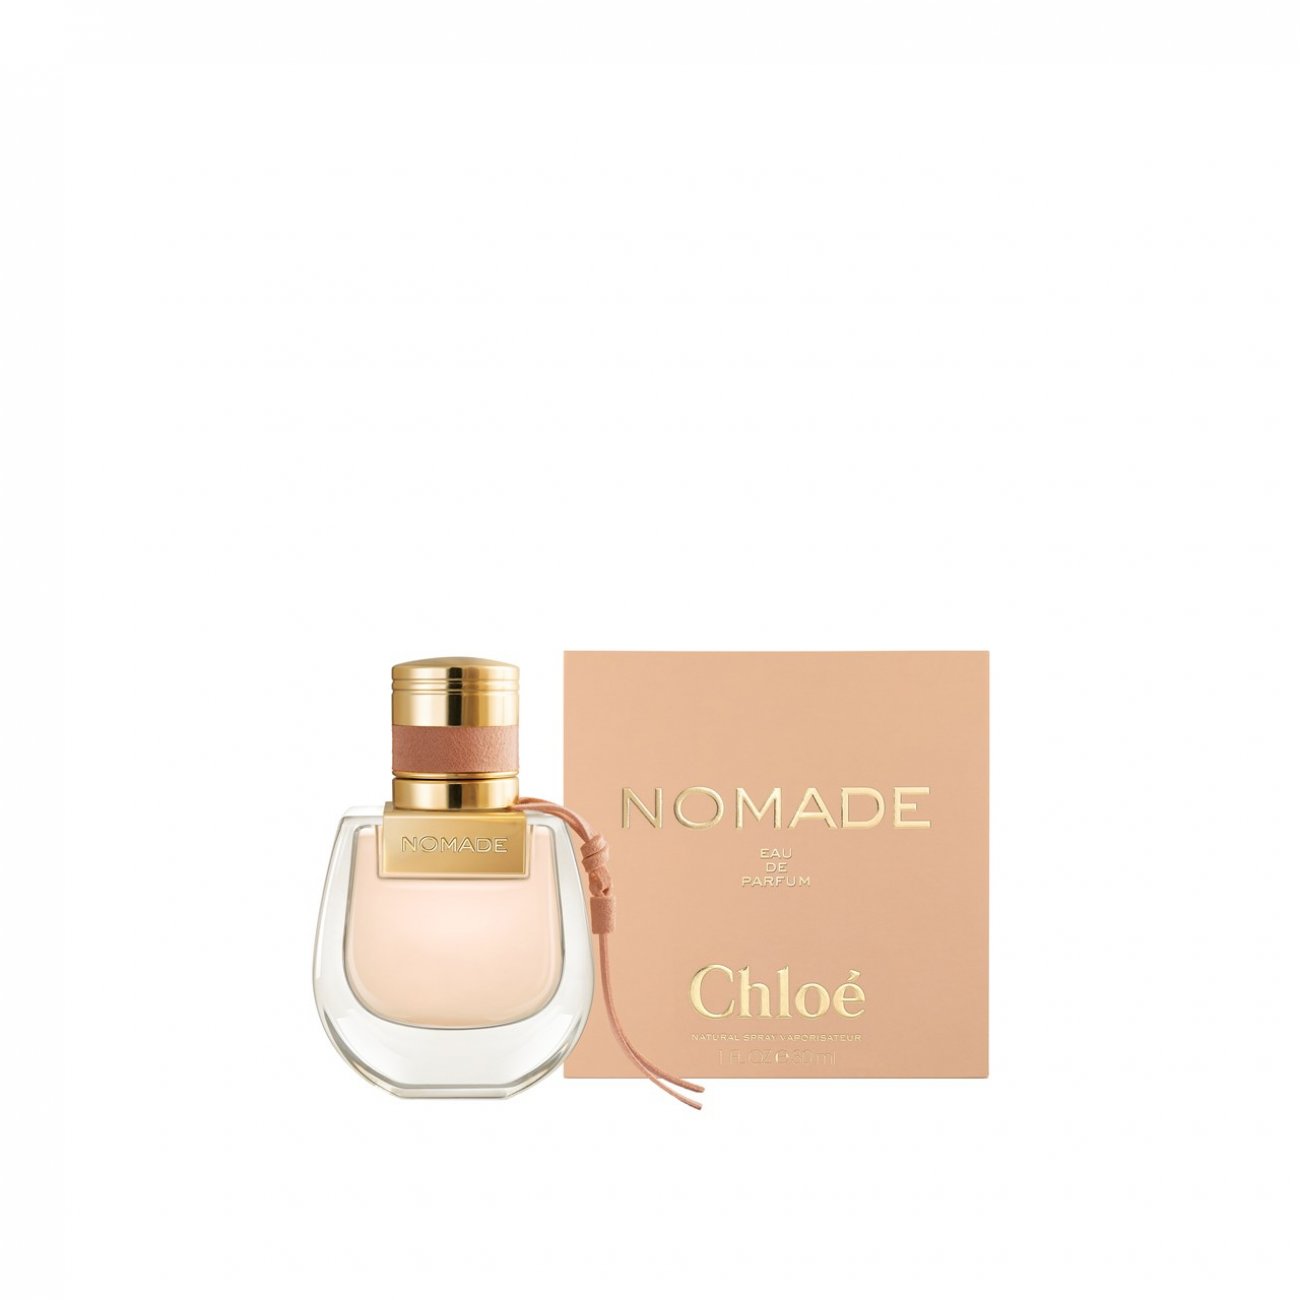 Chloe Original Eau De Parfum | lupon.gov.ph